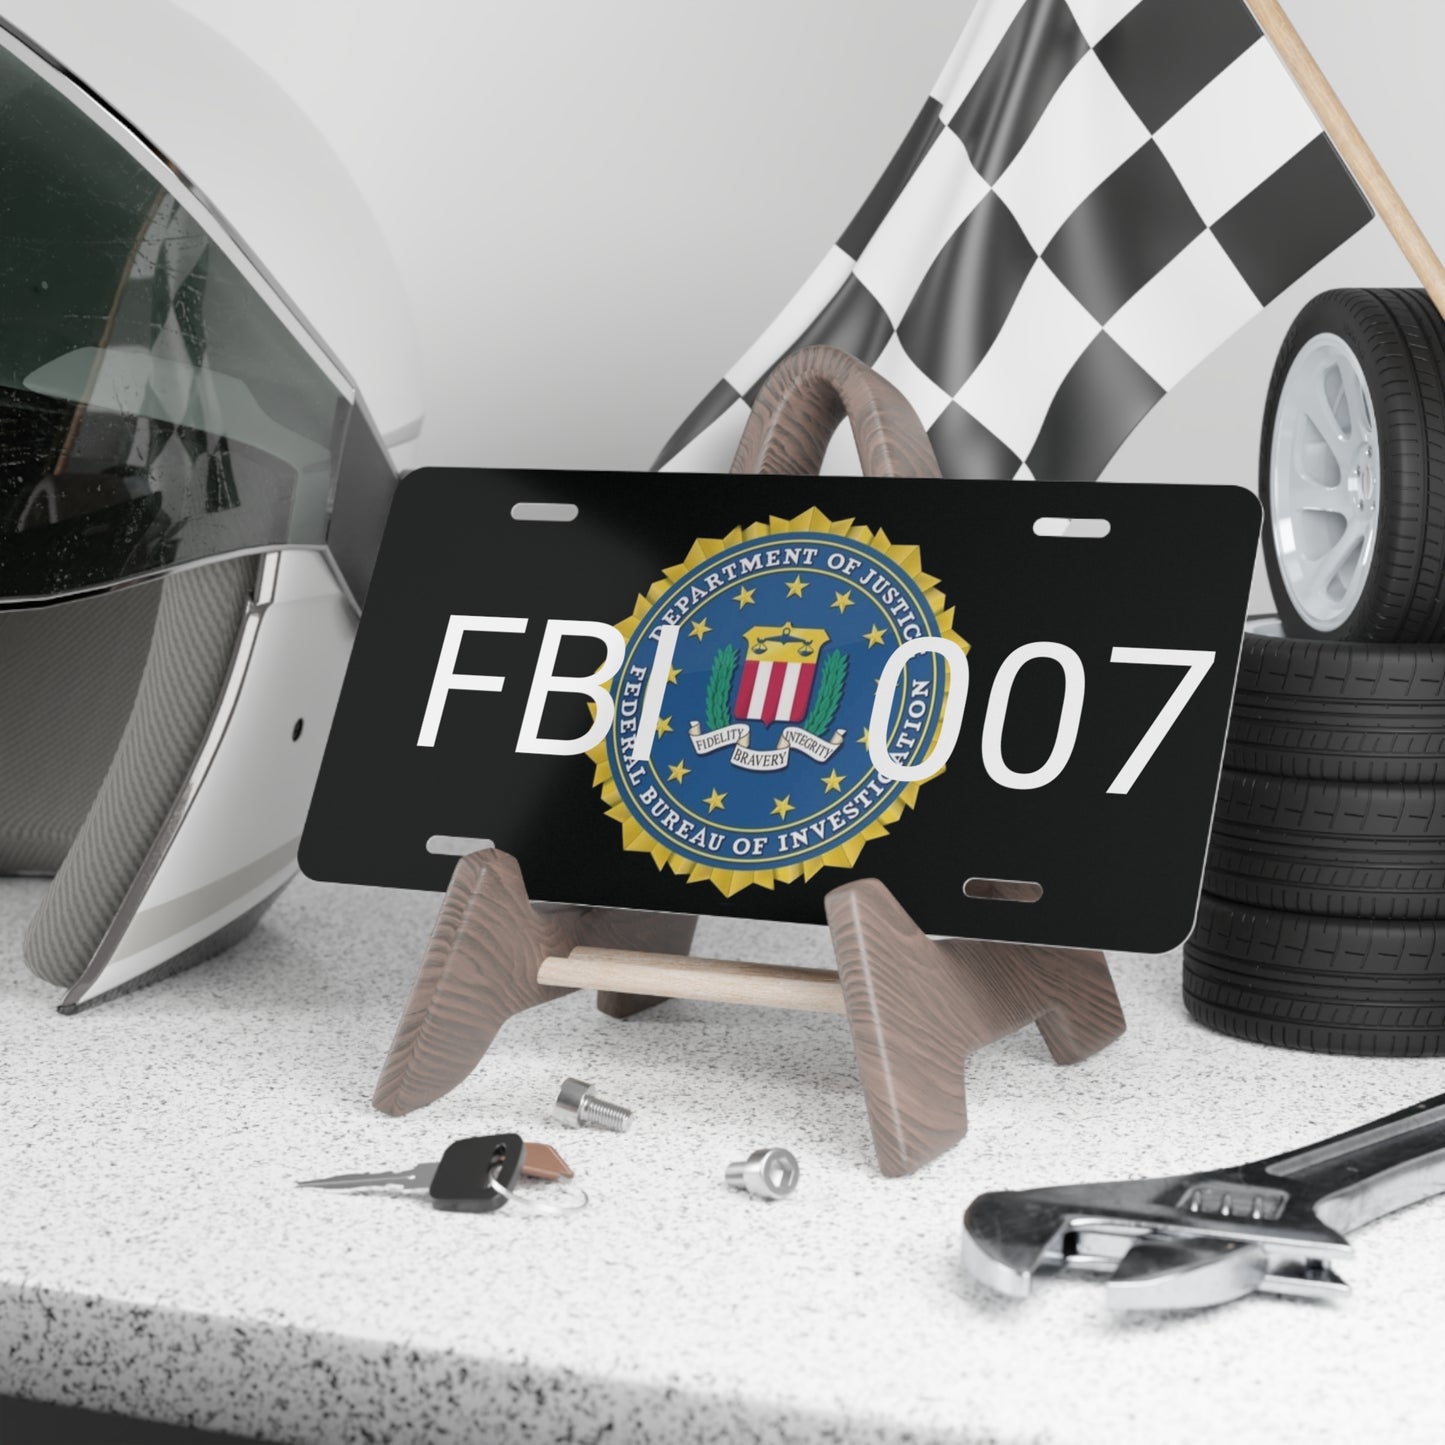 FBI - 007 Vanity License Plate